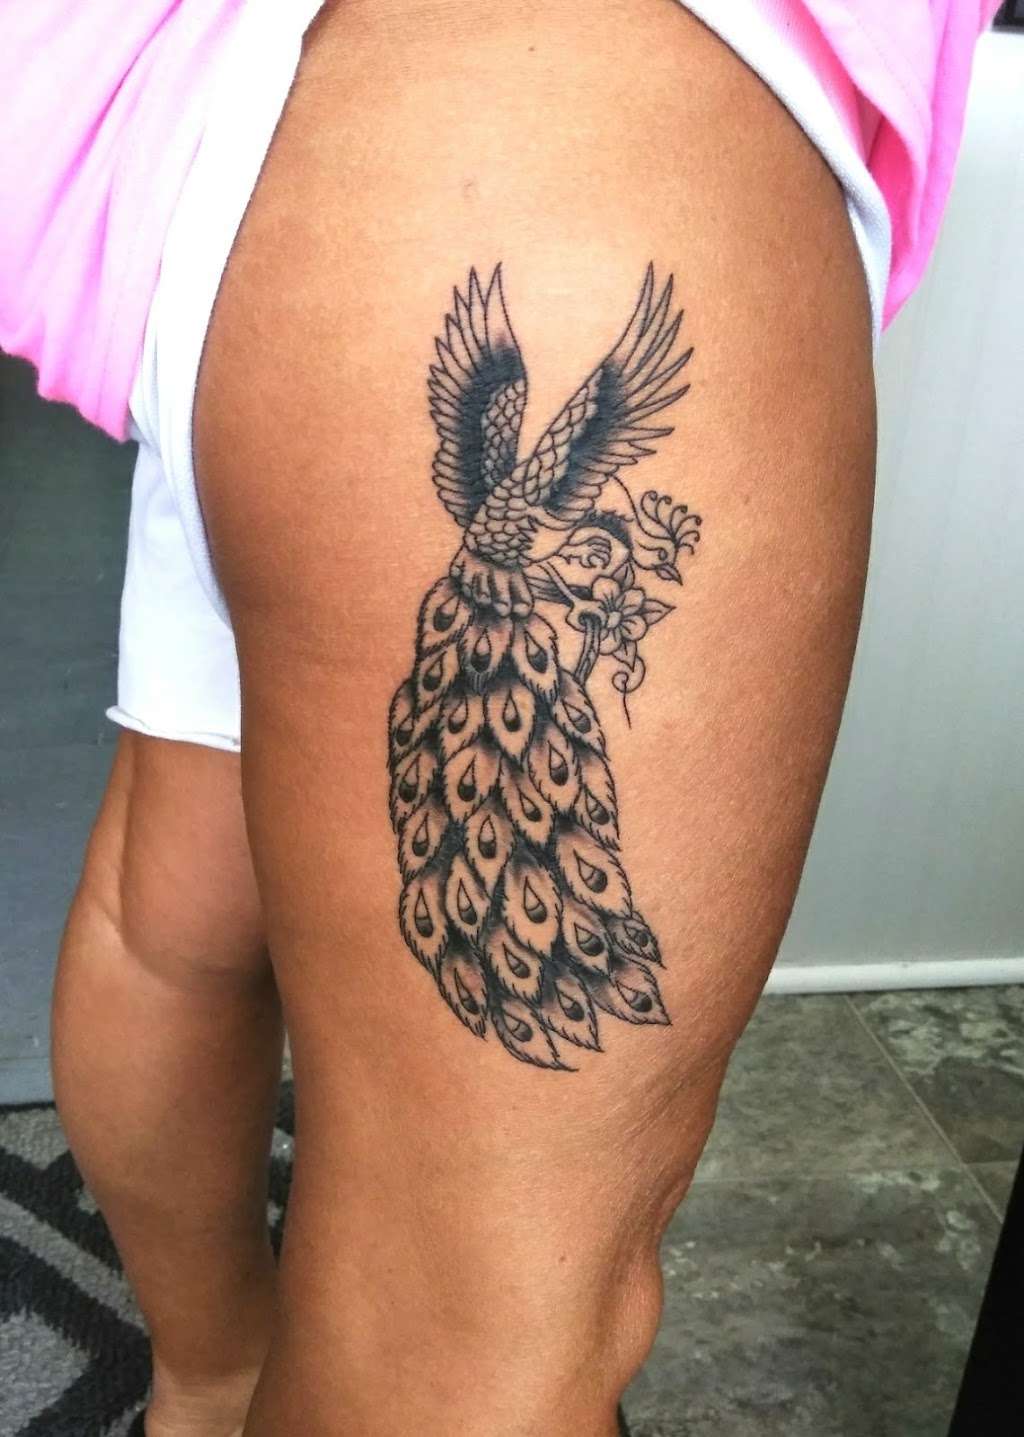 Jays Custom Tattooing | 110 N Main St, Wingate, NC 28174, USA | Phone: (704) 245-3253